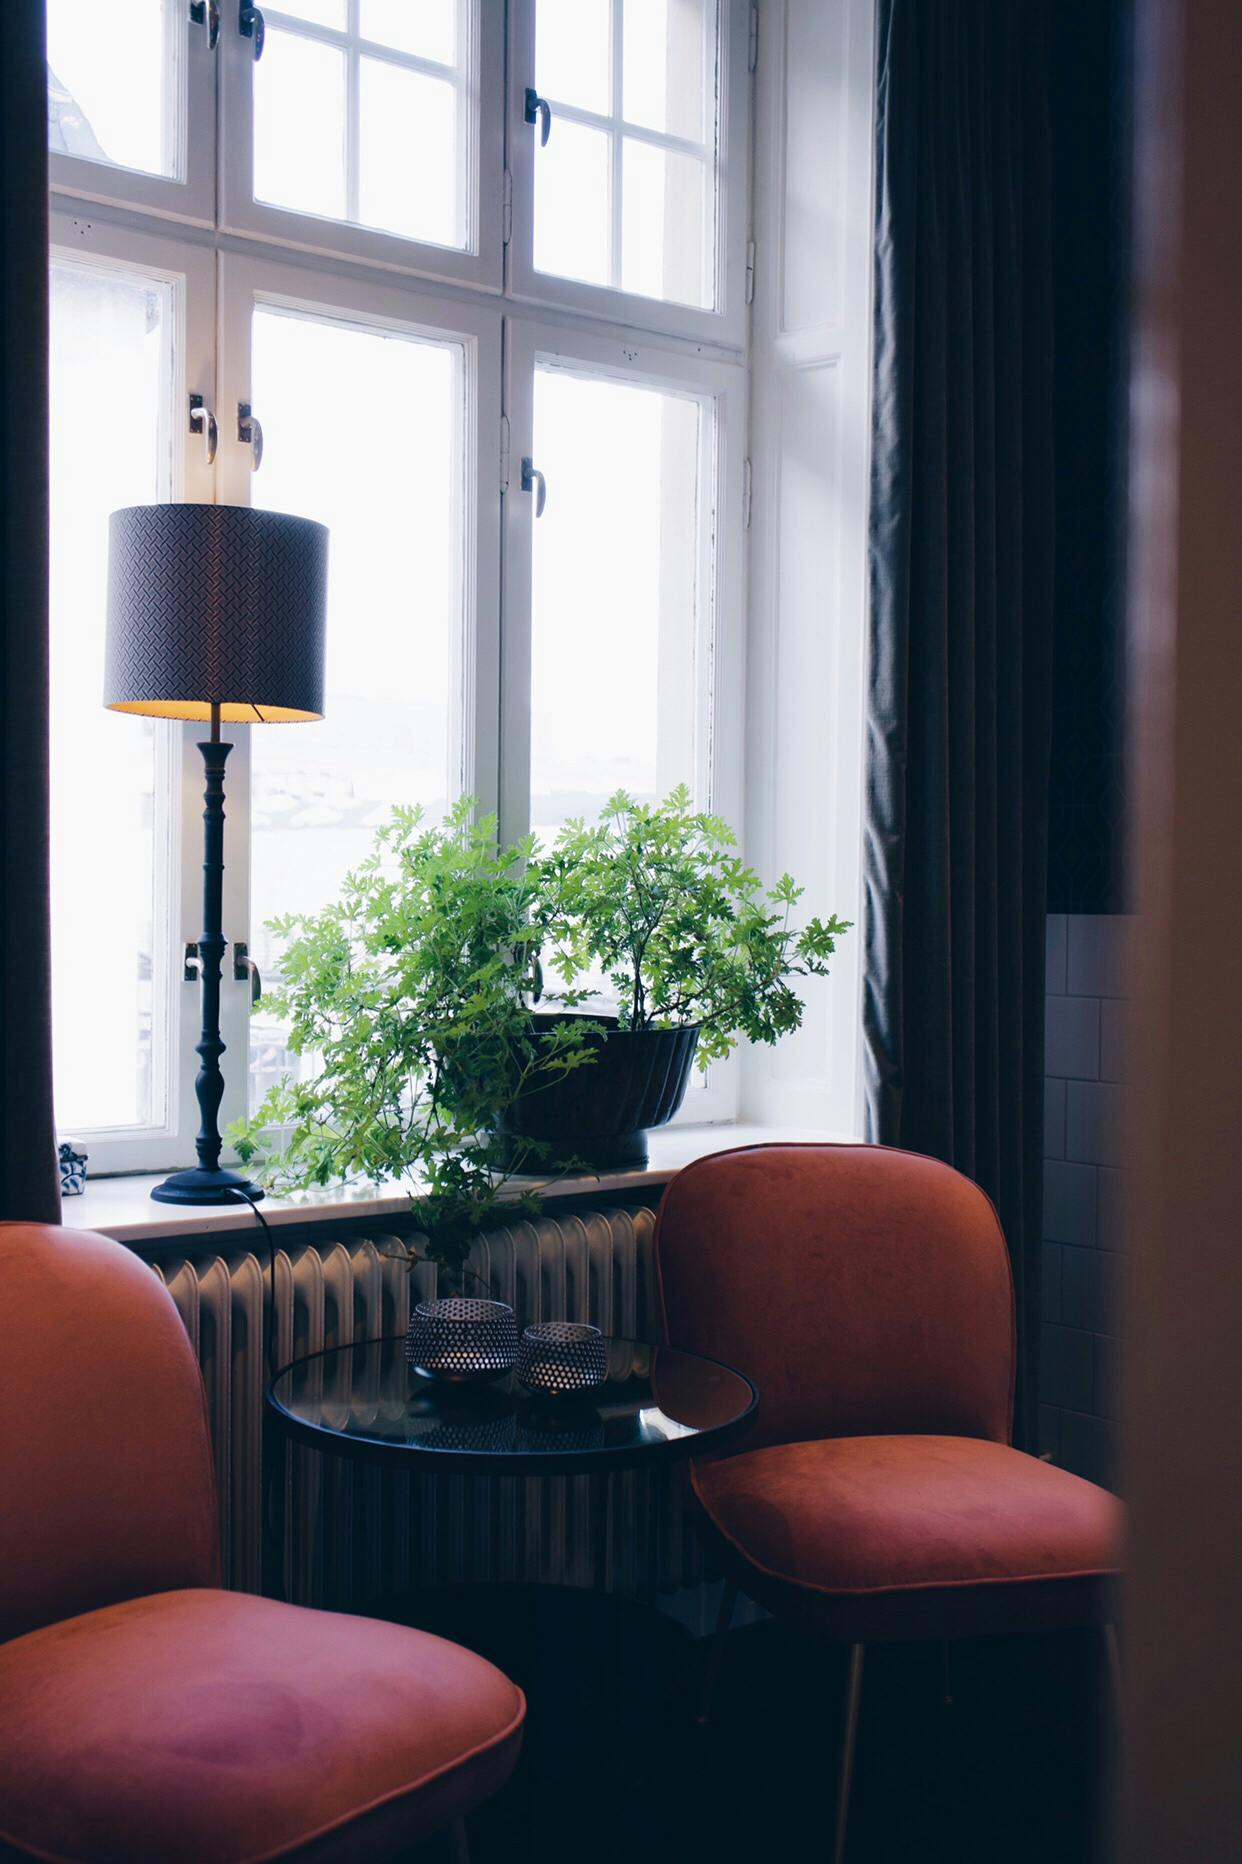 Stolar och sidobord vid fönster på Consids kontor i Uppsala